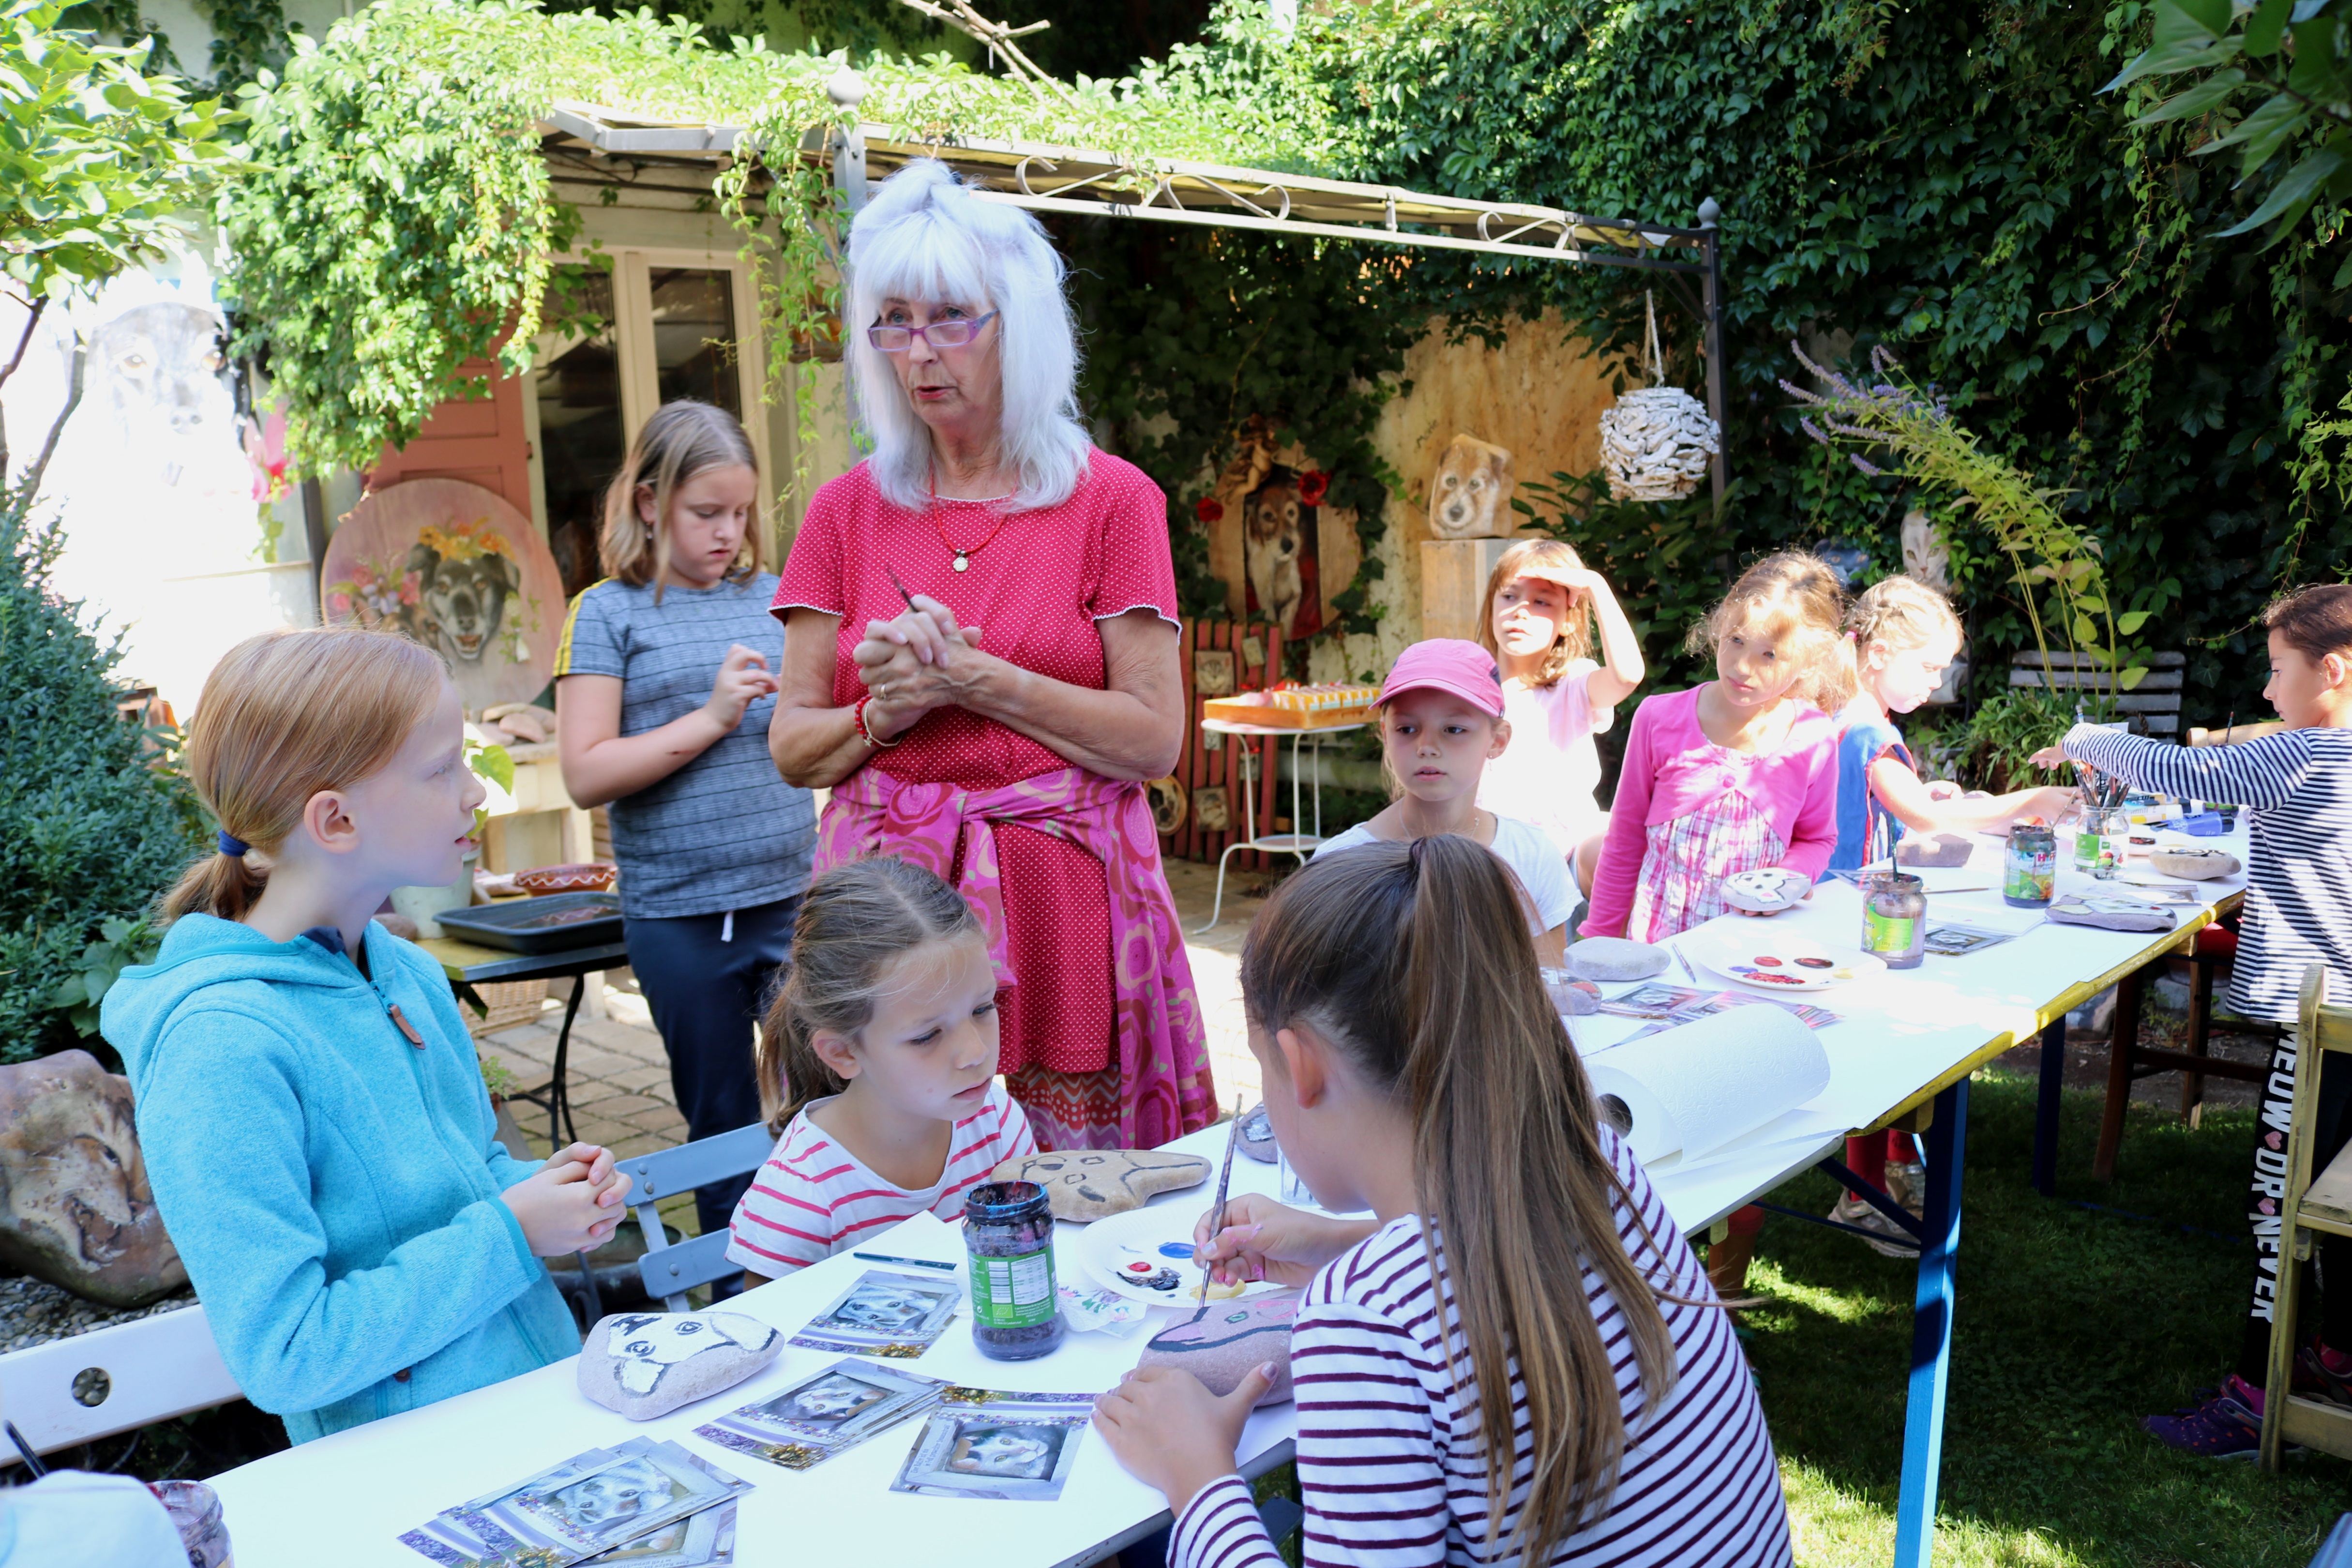  Evelyn Fleig (Mitte), bekannt durch ihre detailgetreuen Tierportraits, hatte zum Ferienspaß in ihren "Zaubergarten" eingeladen. 